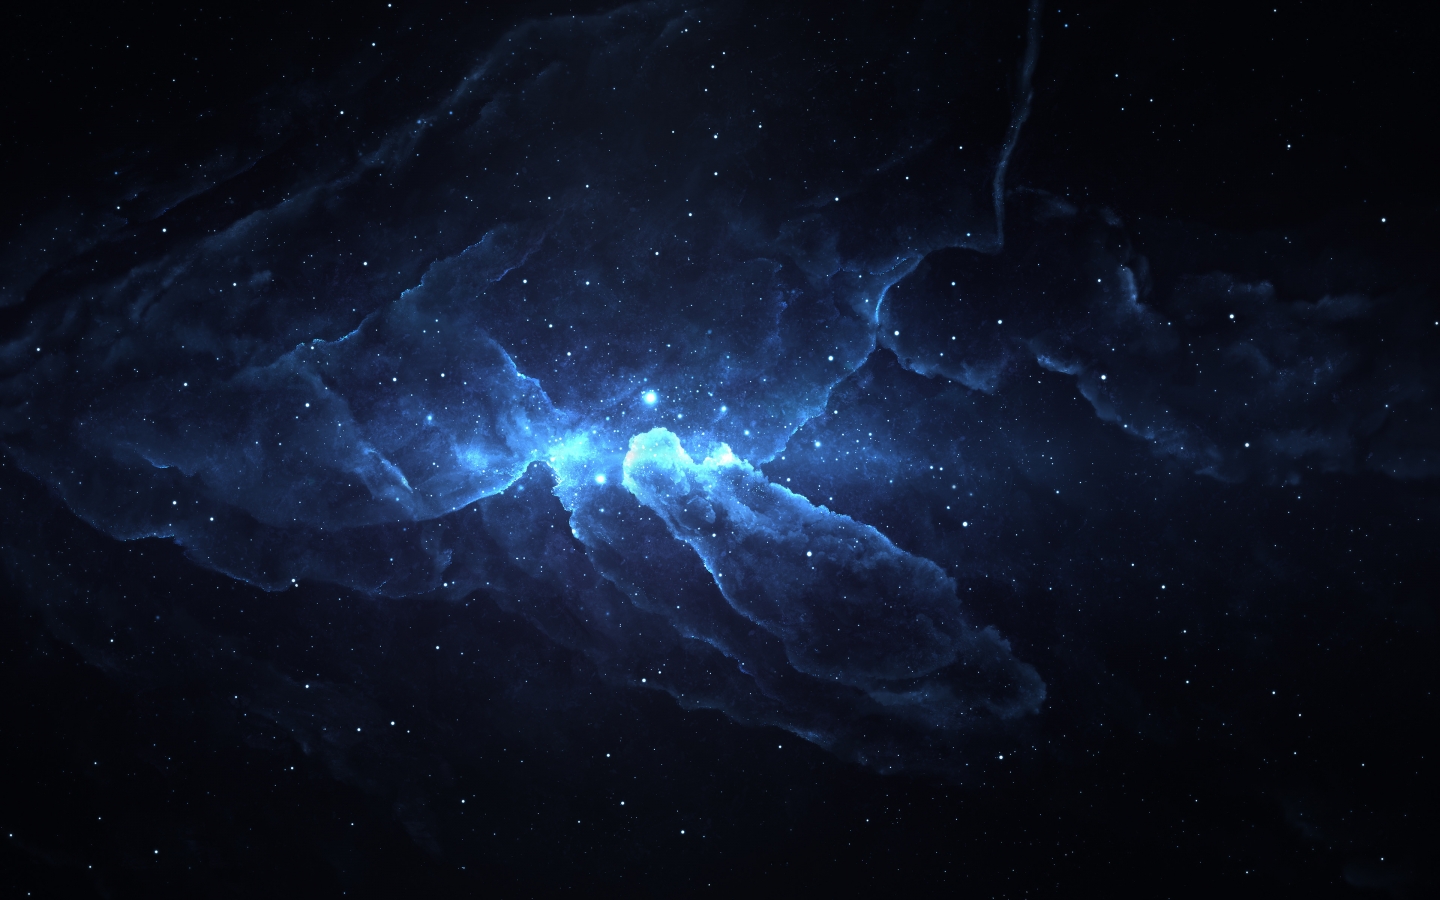 Atlantis Nebula 4 for 1440 x 900 widescreen resolution